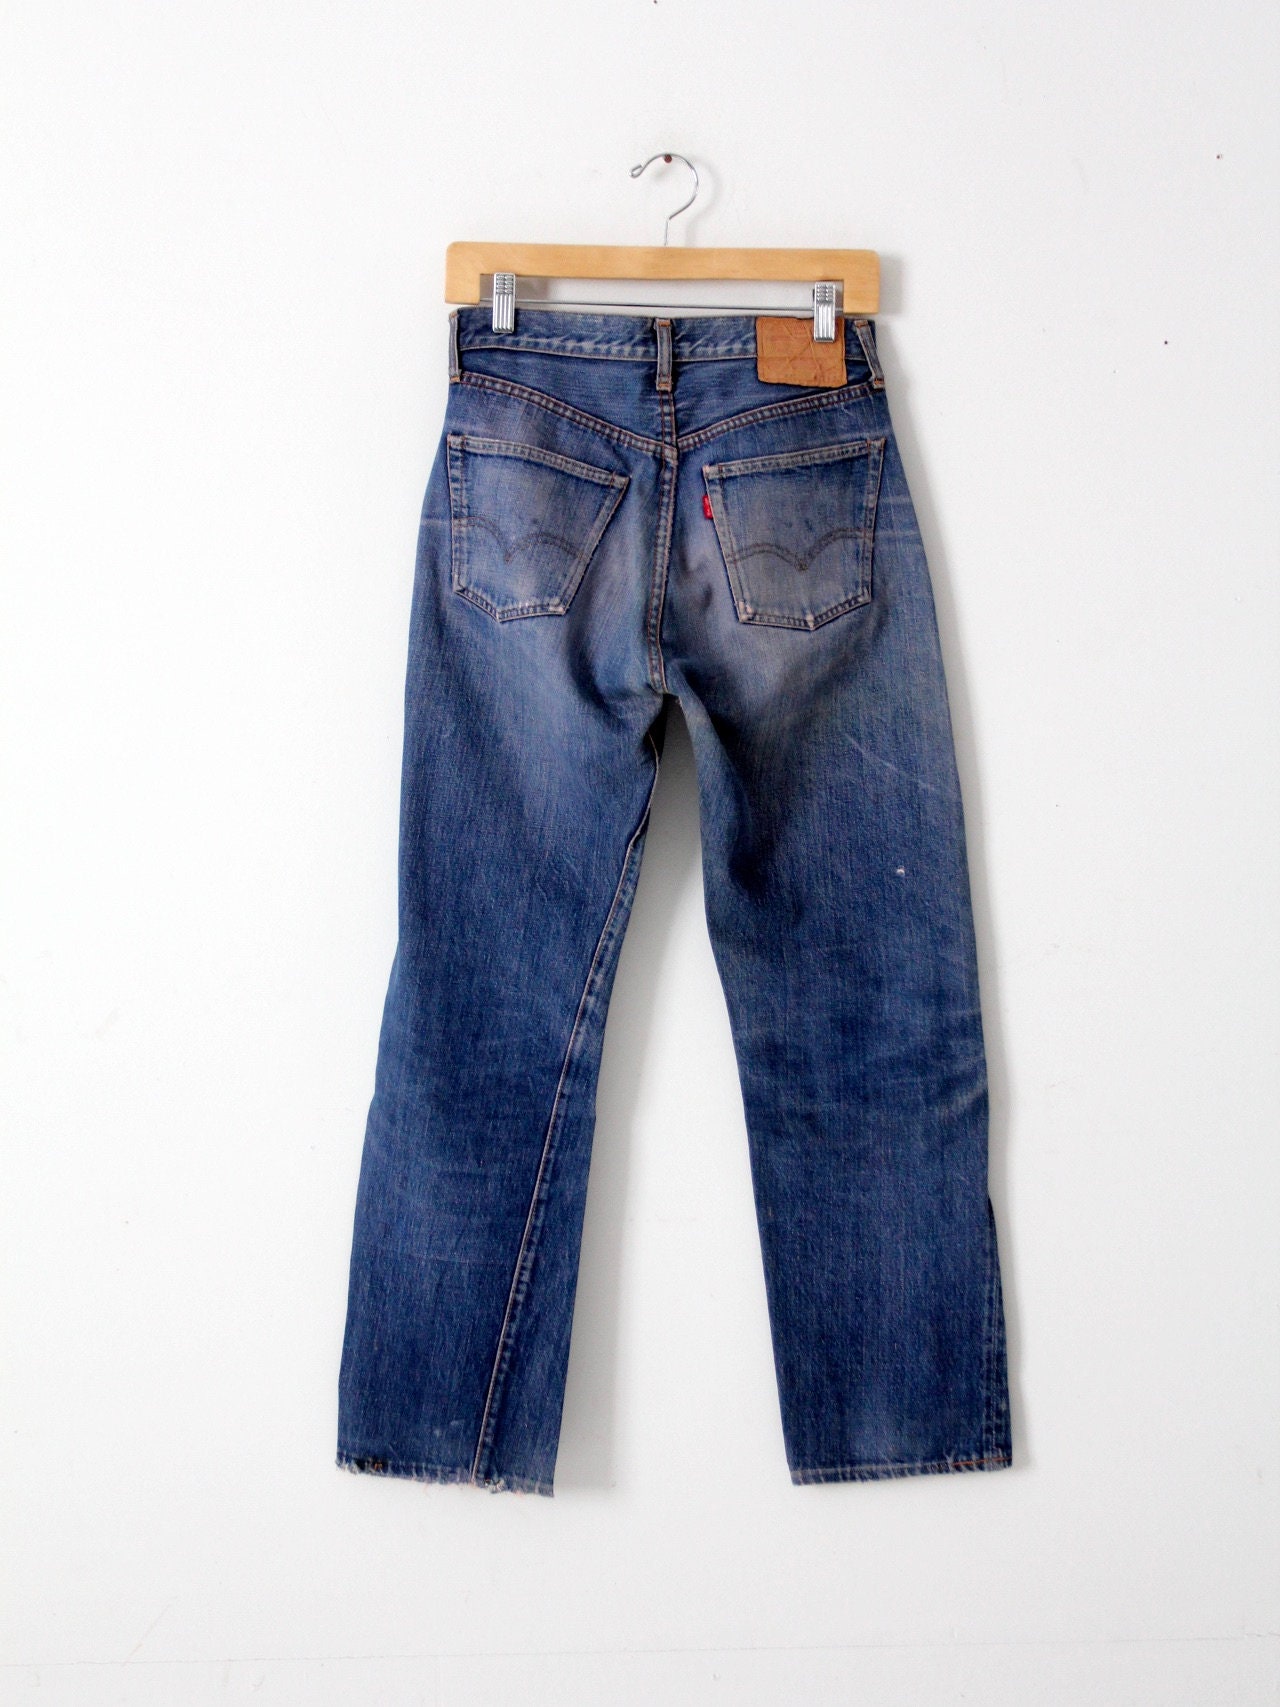 Levis 501 Big E Selvedge Jeans Vintage Levi's Red Line - Etsy